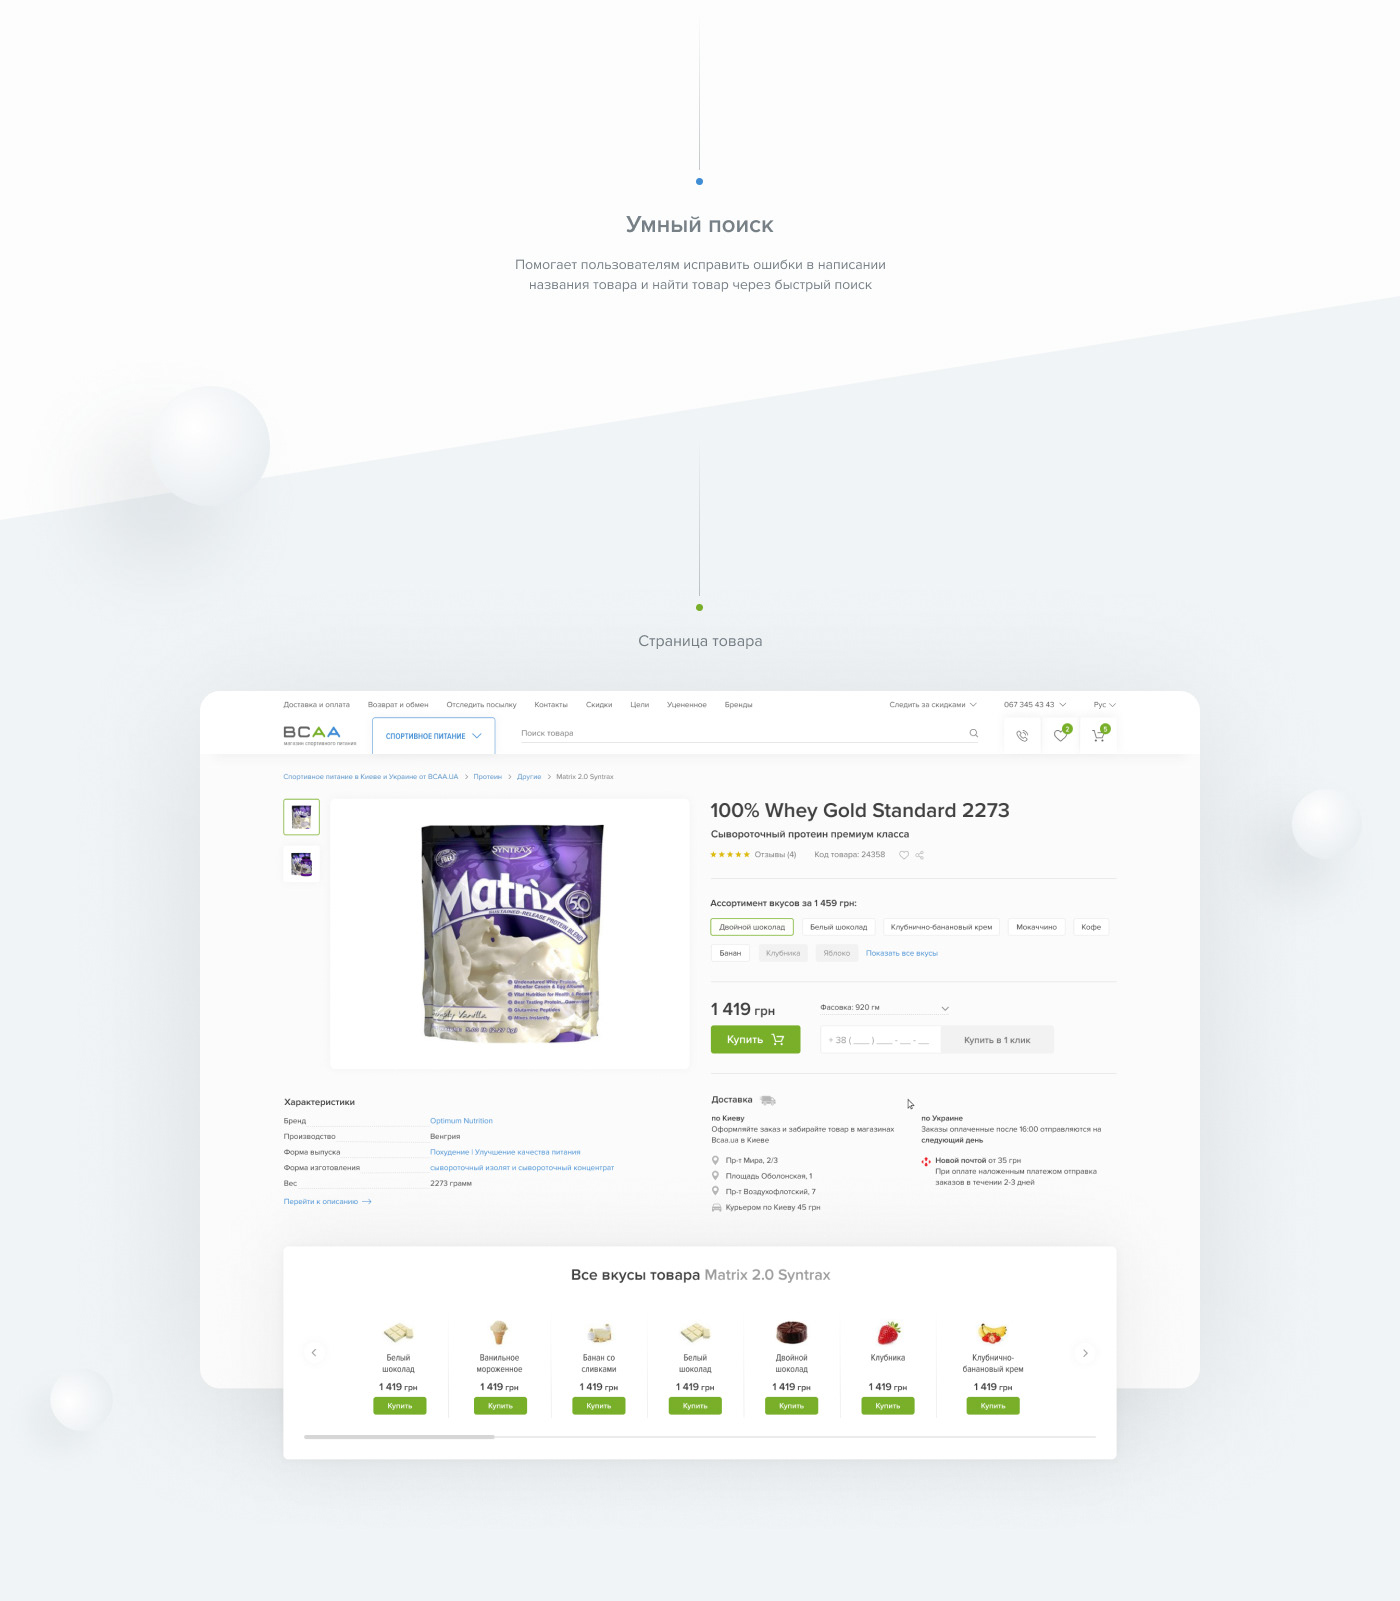 дизайн Web Webdesign Ecommerce Onlineshop онлайн магазин фигма Figma магазин Екомерс